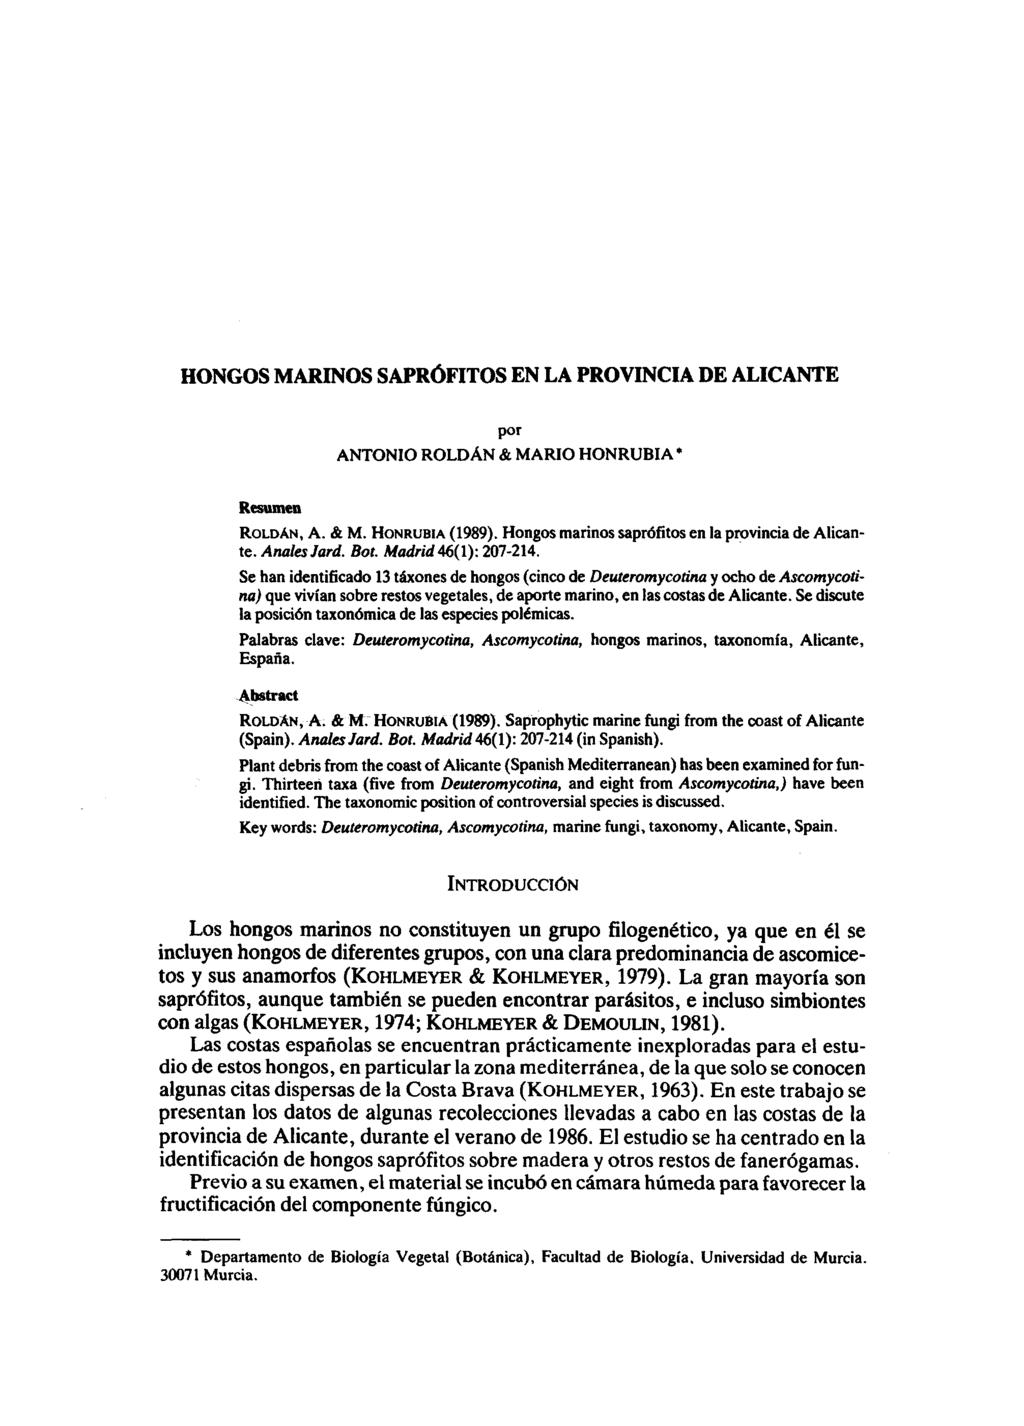 HONGOS MARINOS SAPROFITOS EN LA PROVINCIA DE ALICANTE por ANTONIO ROLDAN & MARIO HONRUBIA* Resumen ROLDAN, A. & M. HONRUBIA (1989). Hongos marinos saprofitos en la provincia de Alicante. Anales Jará.